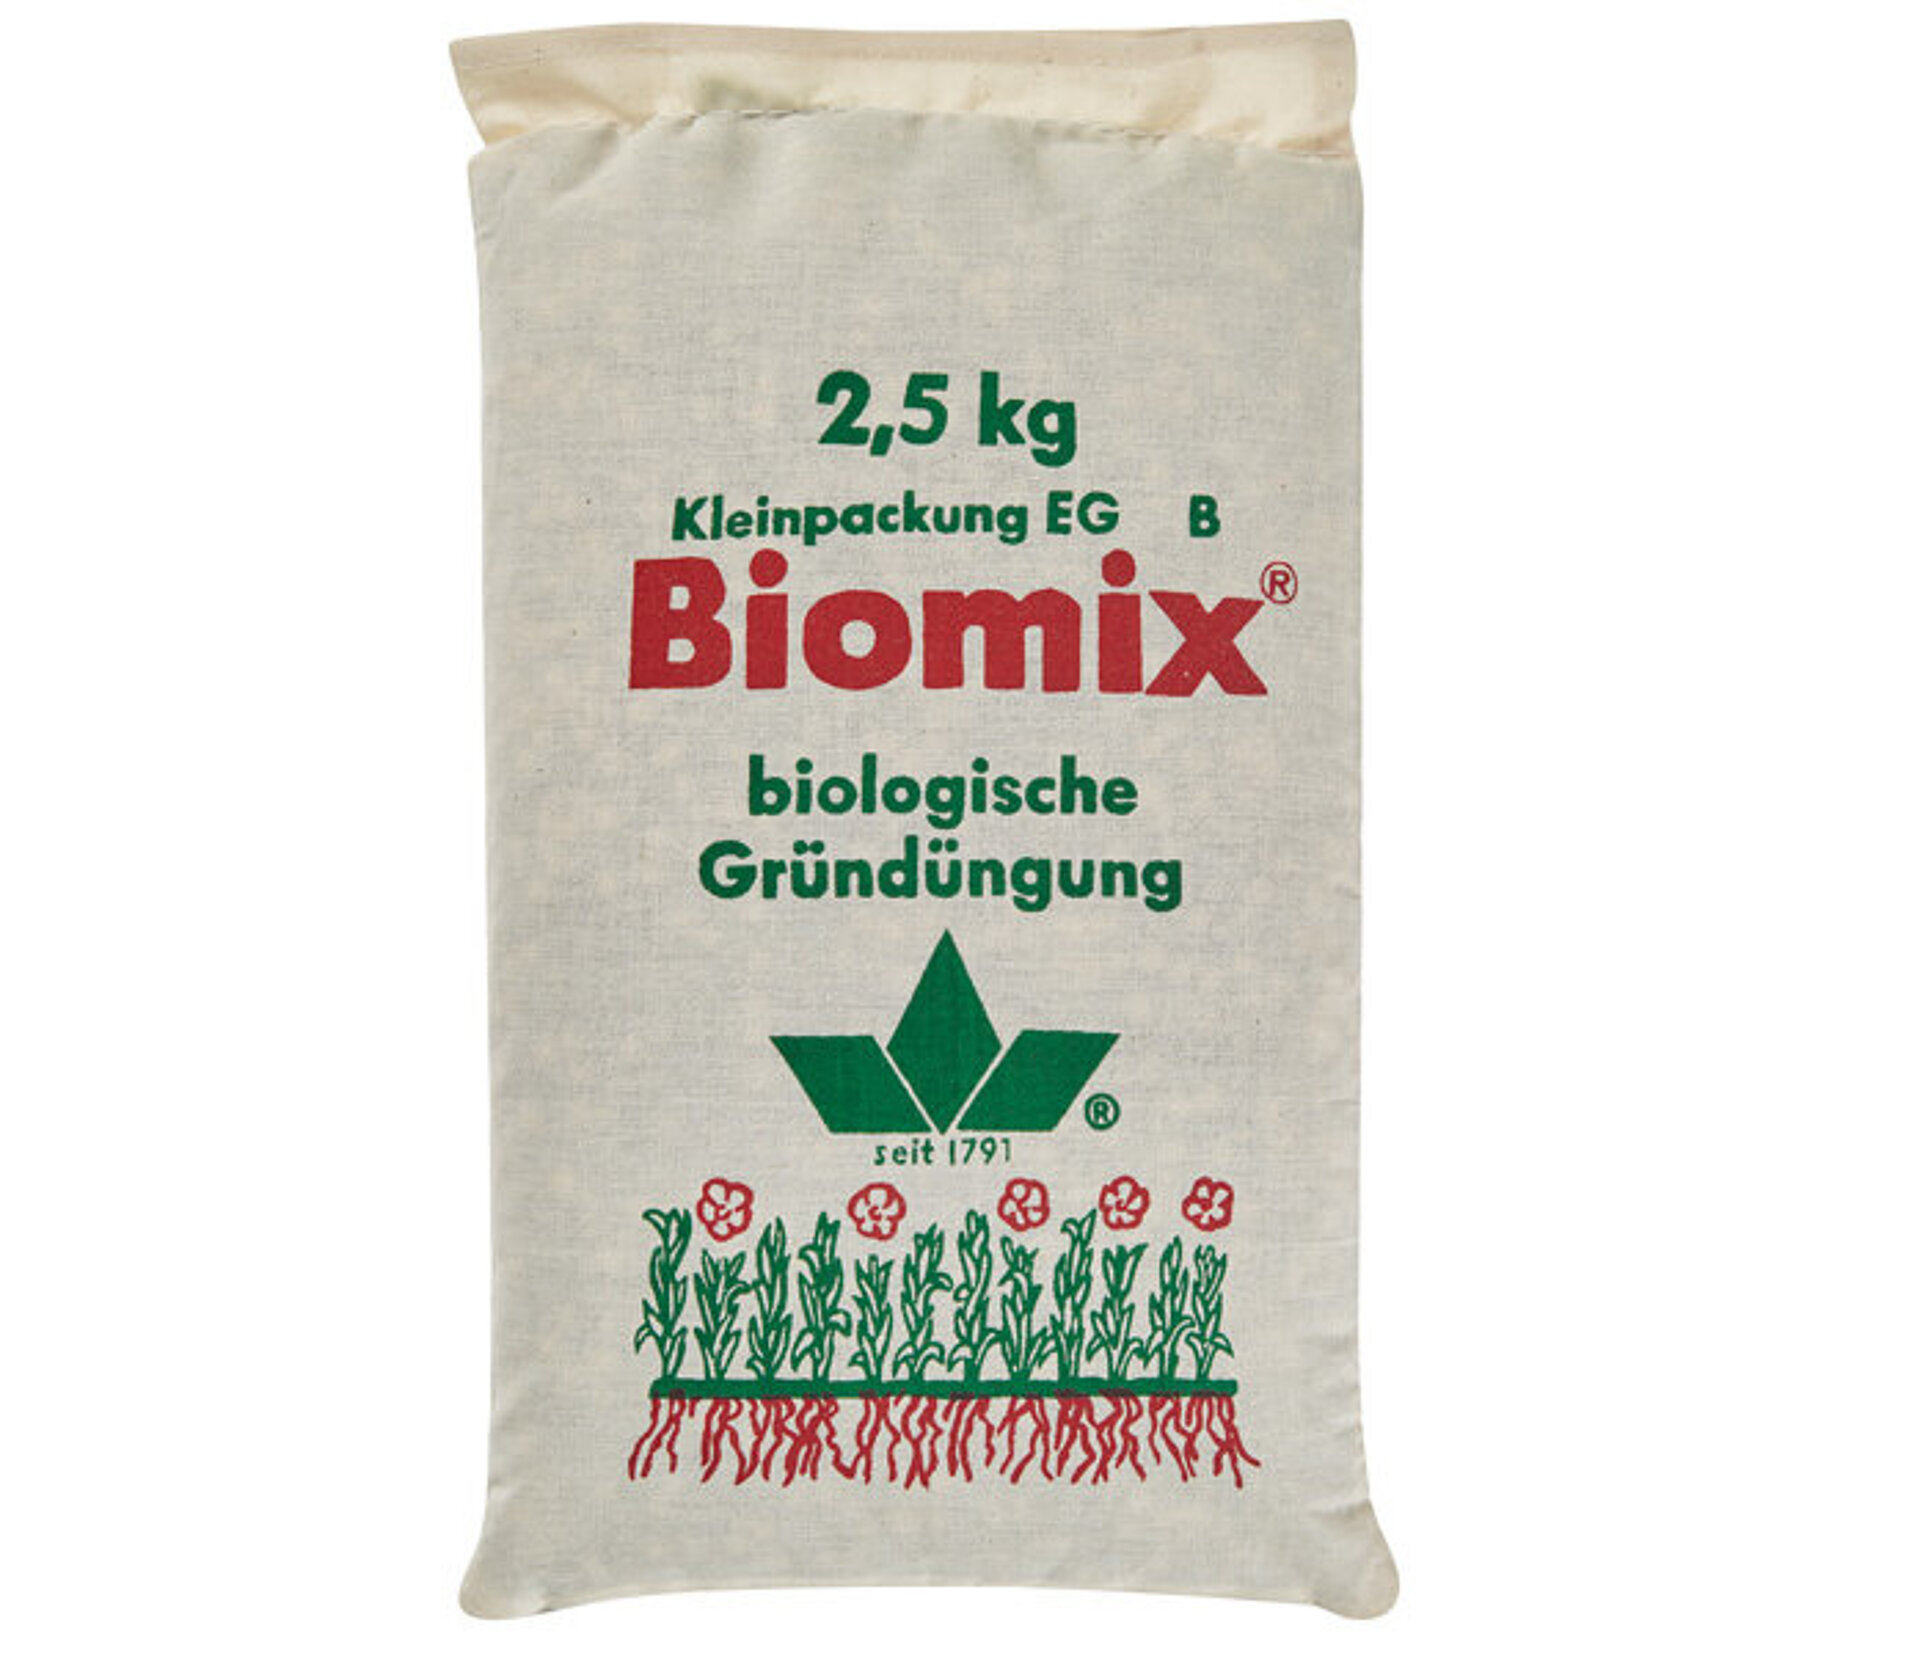 Biomix 2,5 kg L. Stroetmann Saat